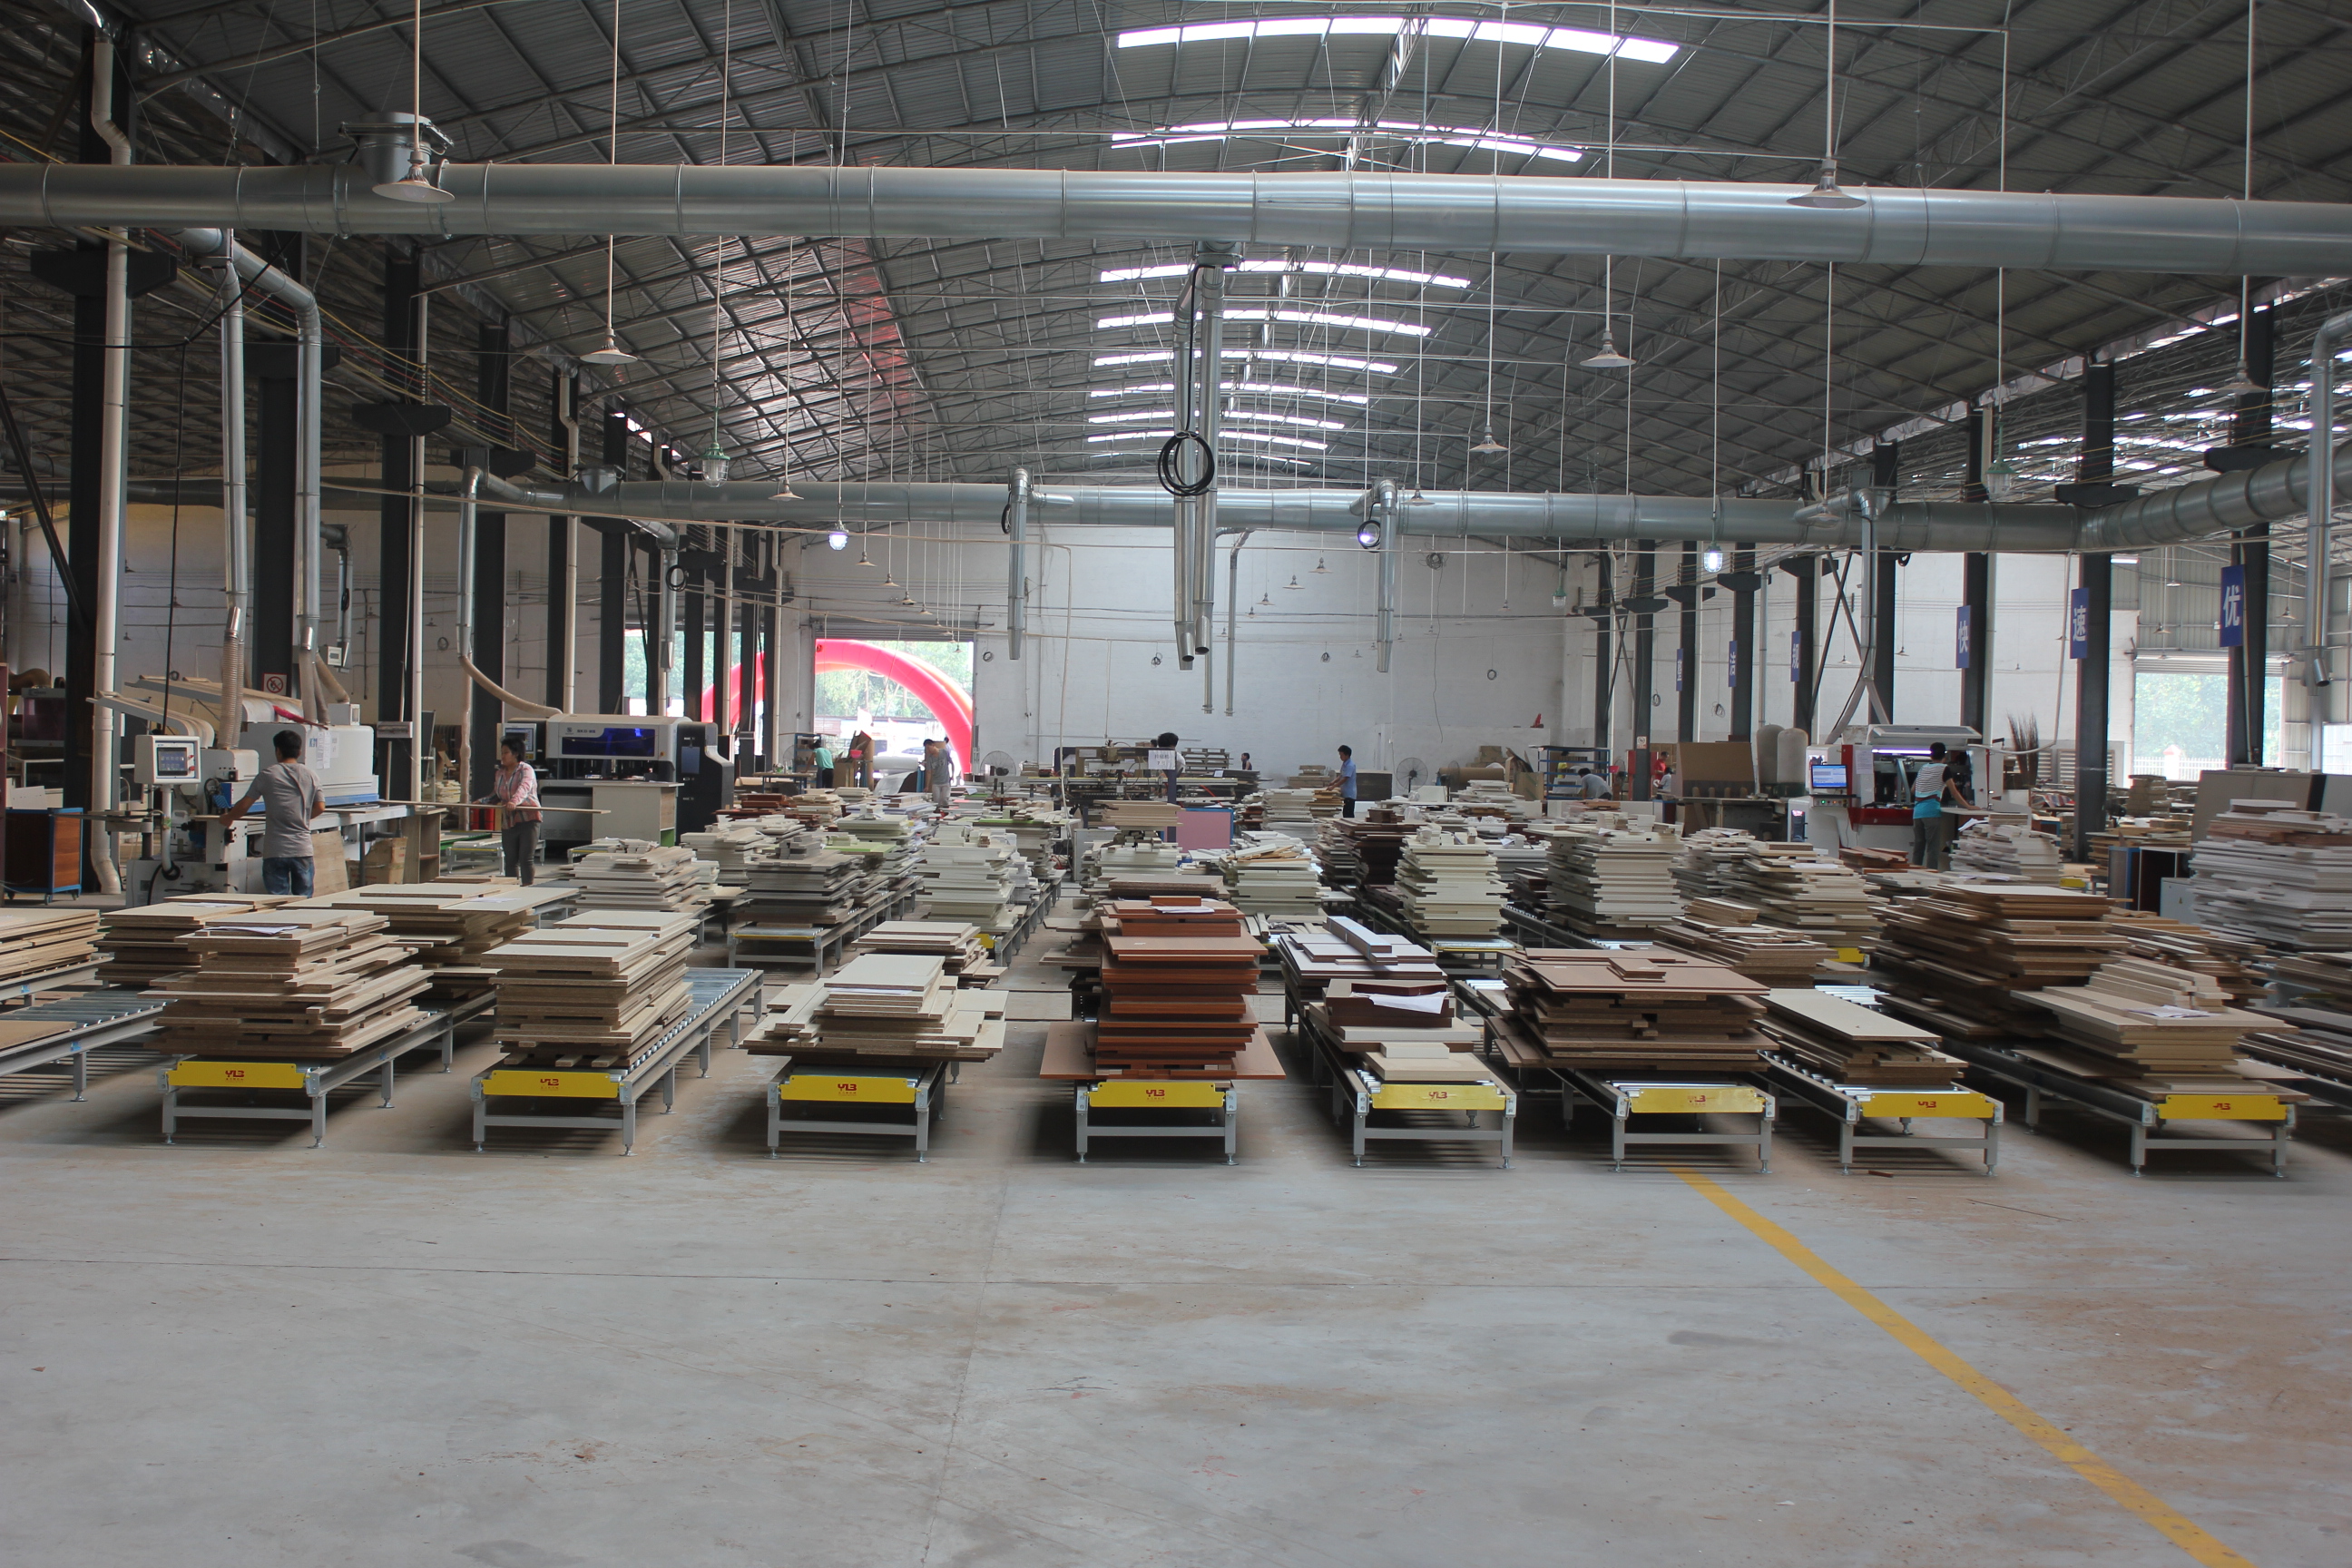 广州金丝楠木家具工厂图片